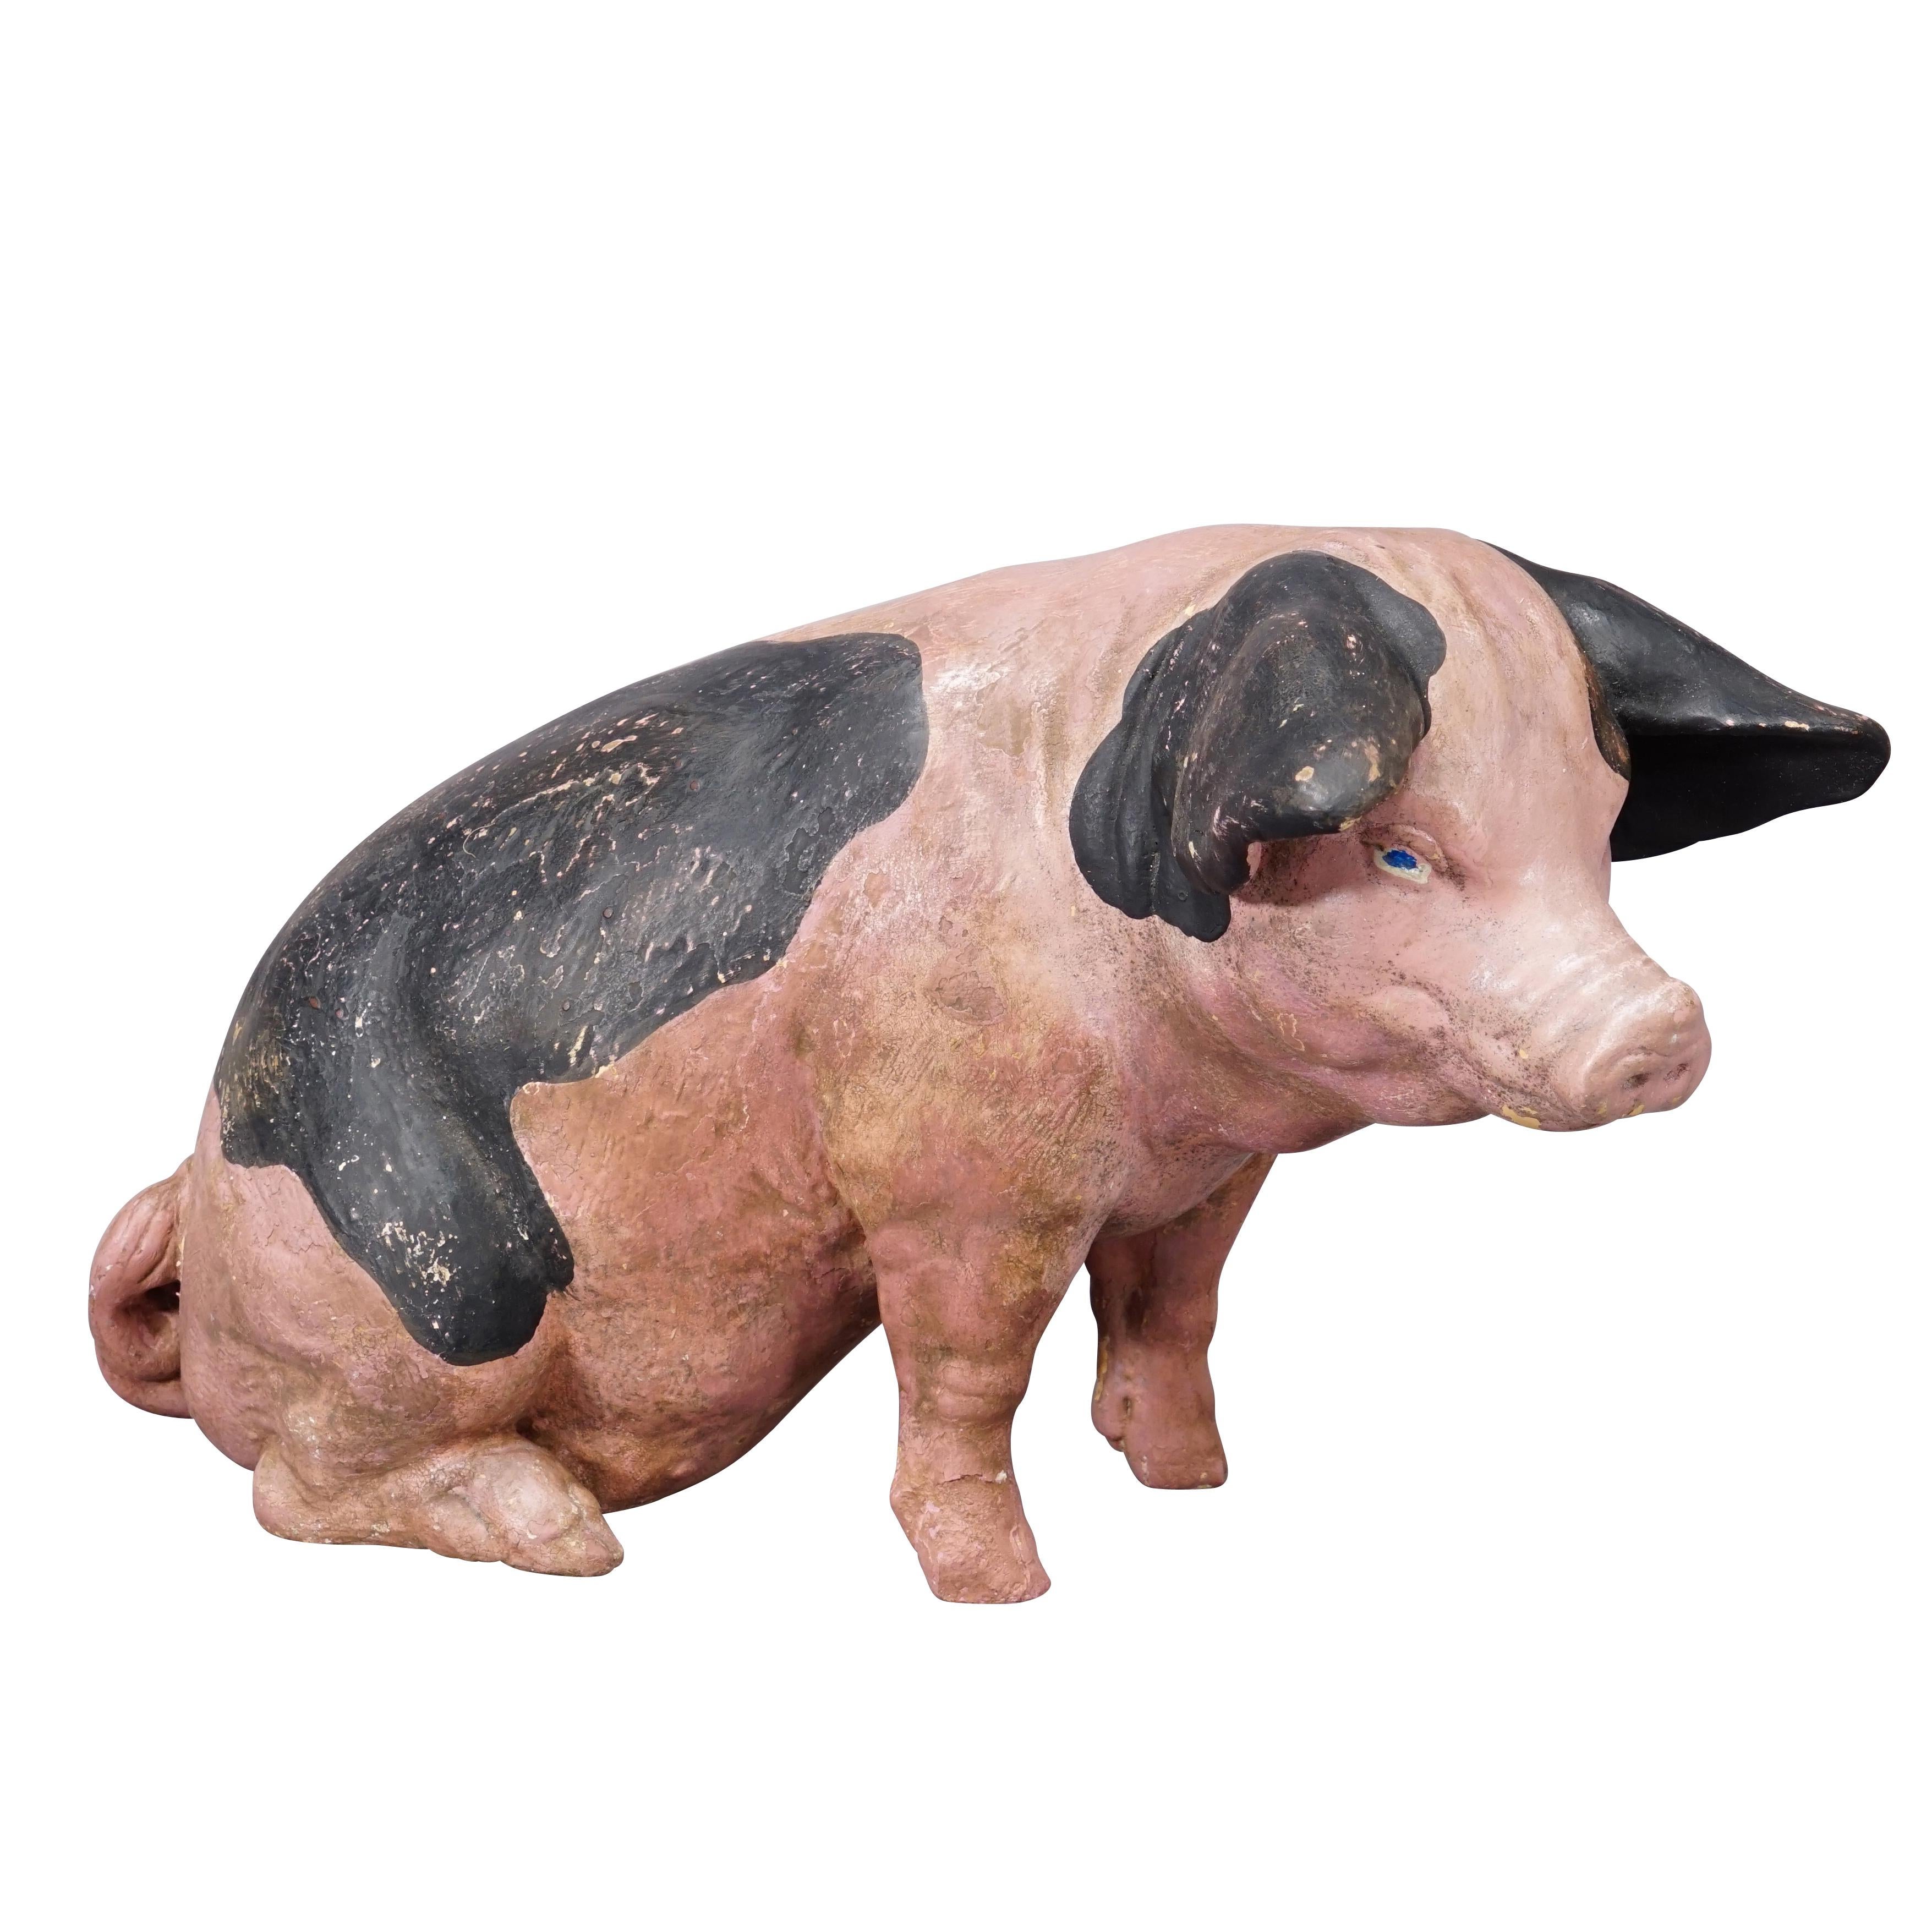 Swabian Hallic Country Pig aus Terrakotta, 1930er Jahre

Eine alte Statue eines schwäbischen Landschweins. Es wurde als Schaufensterdekoration in einer deutschen Metzgerei verwendet. Die Statue besteht aus Terakotta und wurde wahrscheinlich um 1930